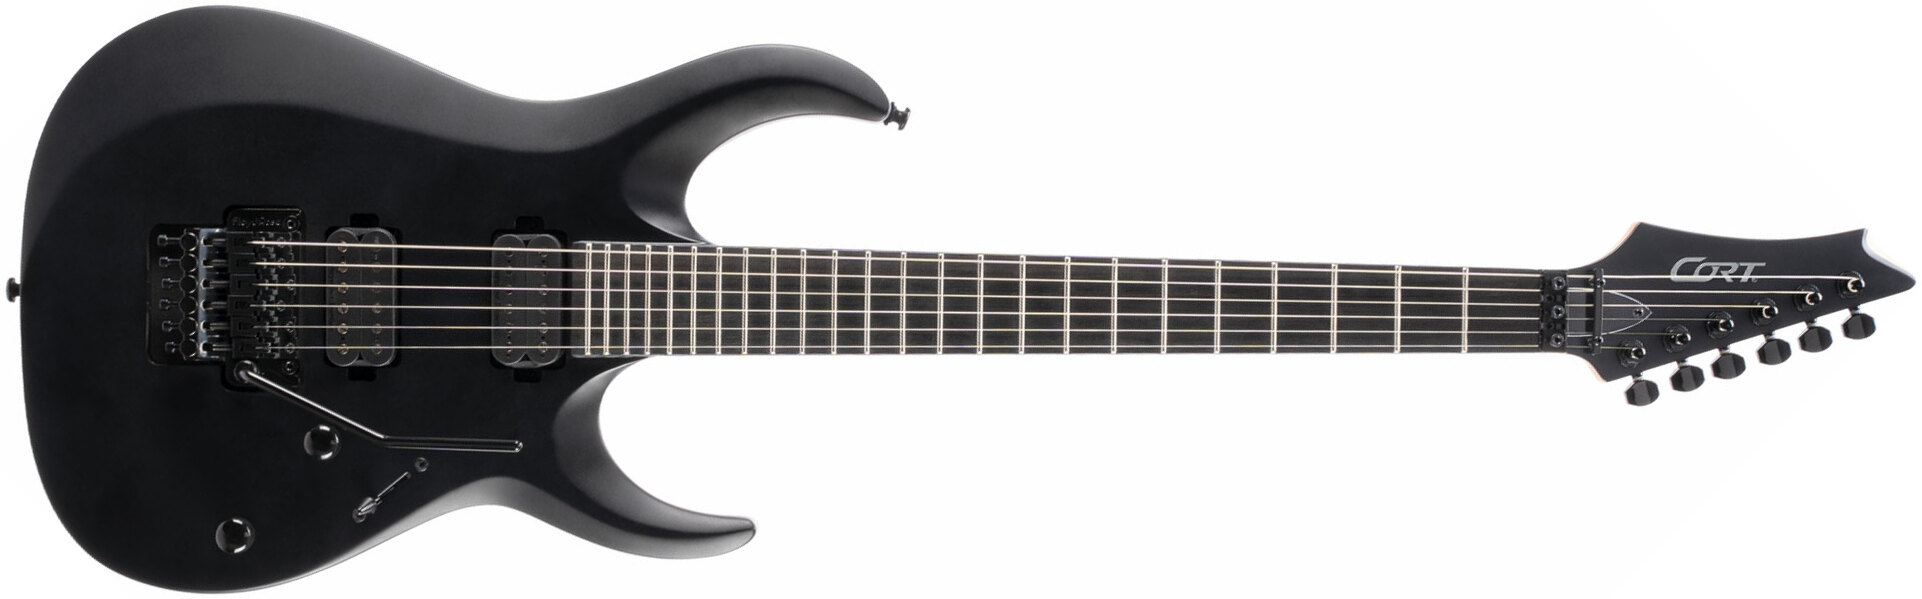 Cort X500 Menace Hh Seymour Duncan Fr Eb - Black Satin - Str shape electric guitar - Main picture